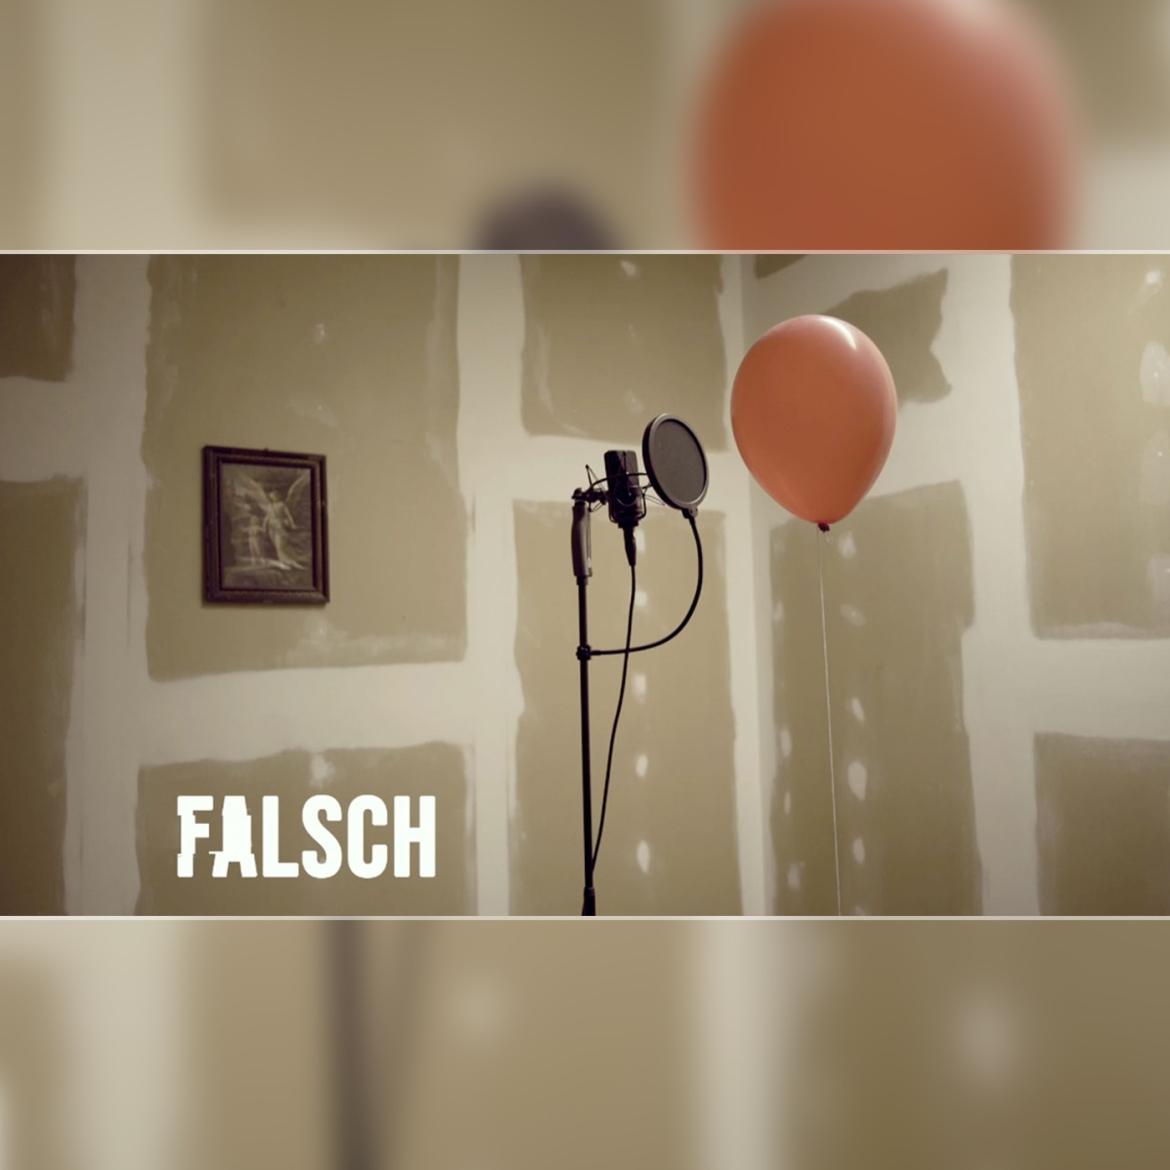 Bisi - Falsch (Official Video) [prod. NZ6]